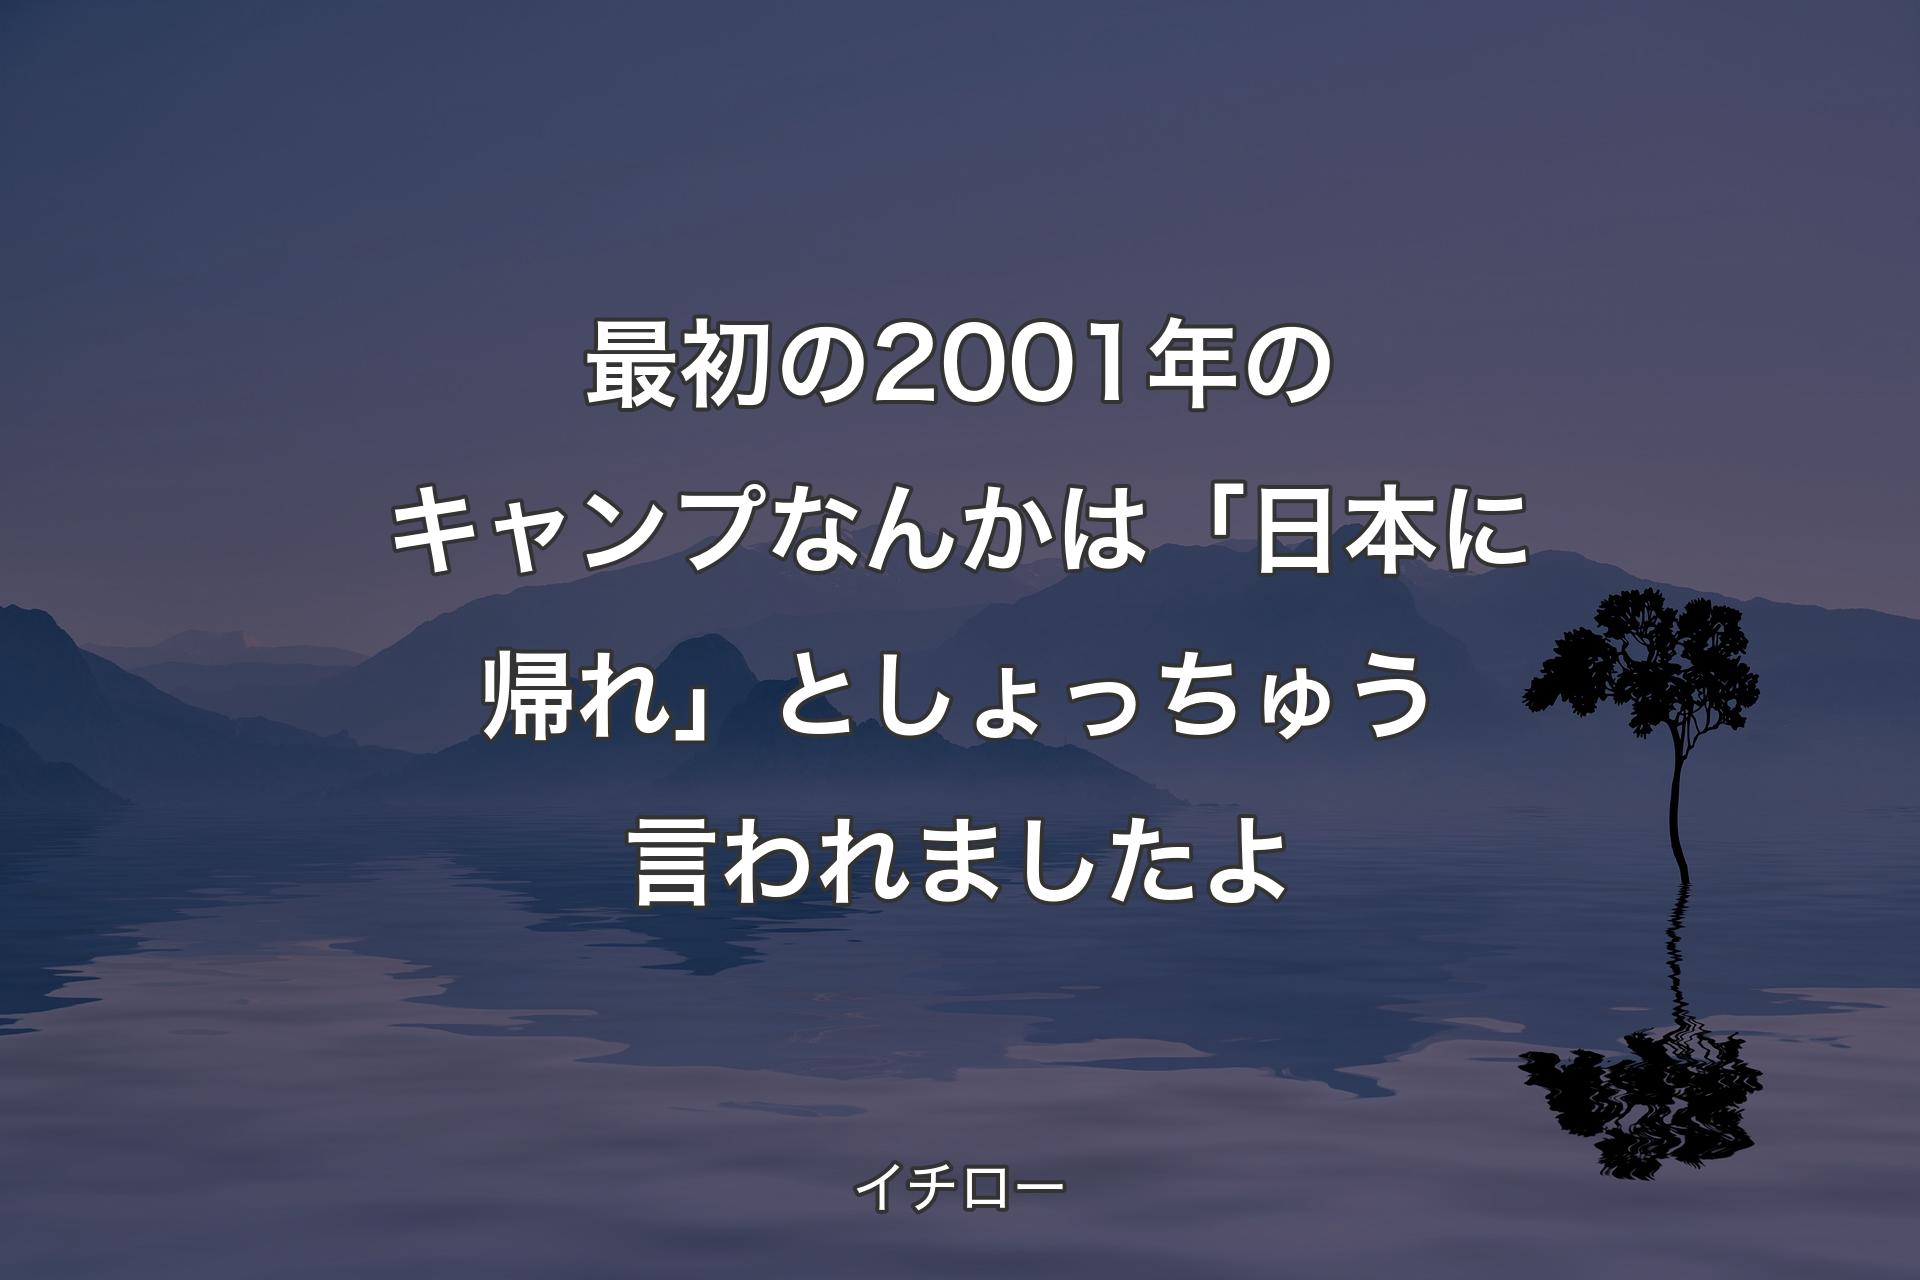 【背景4】最初の2001年のキャンプなんかは「日本に帰れ」としょっちゅう言われましたよ - イチロー